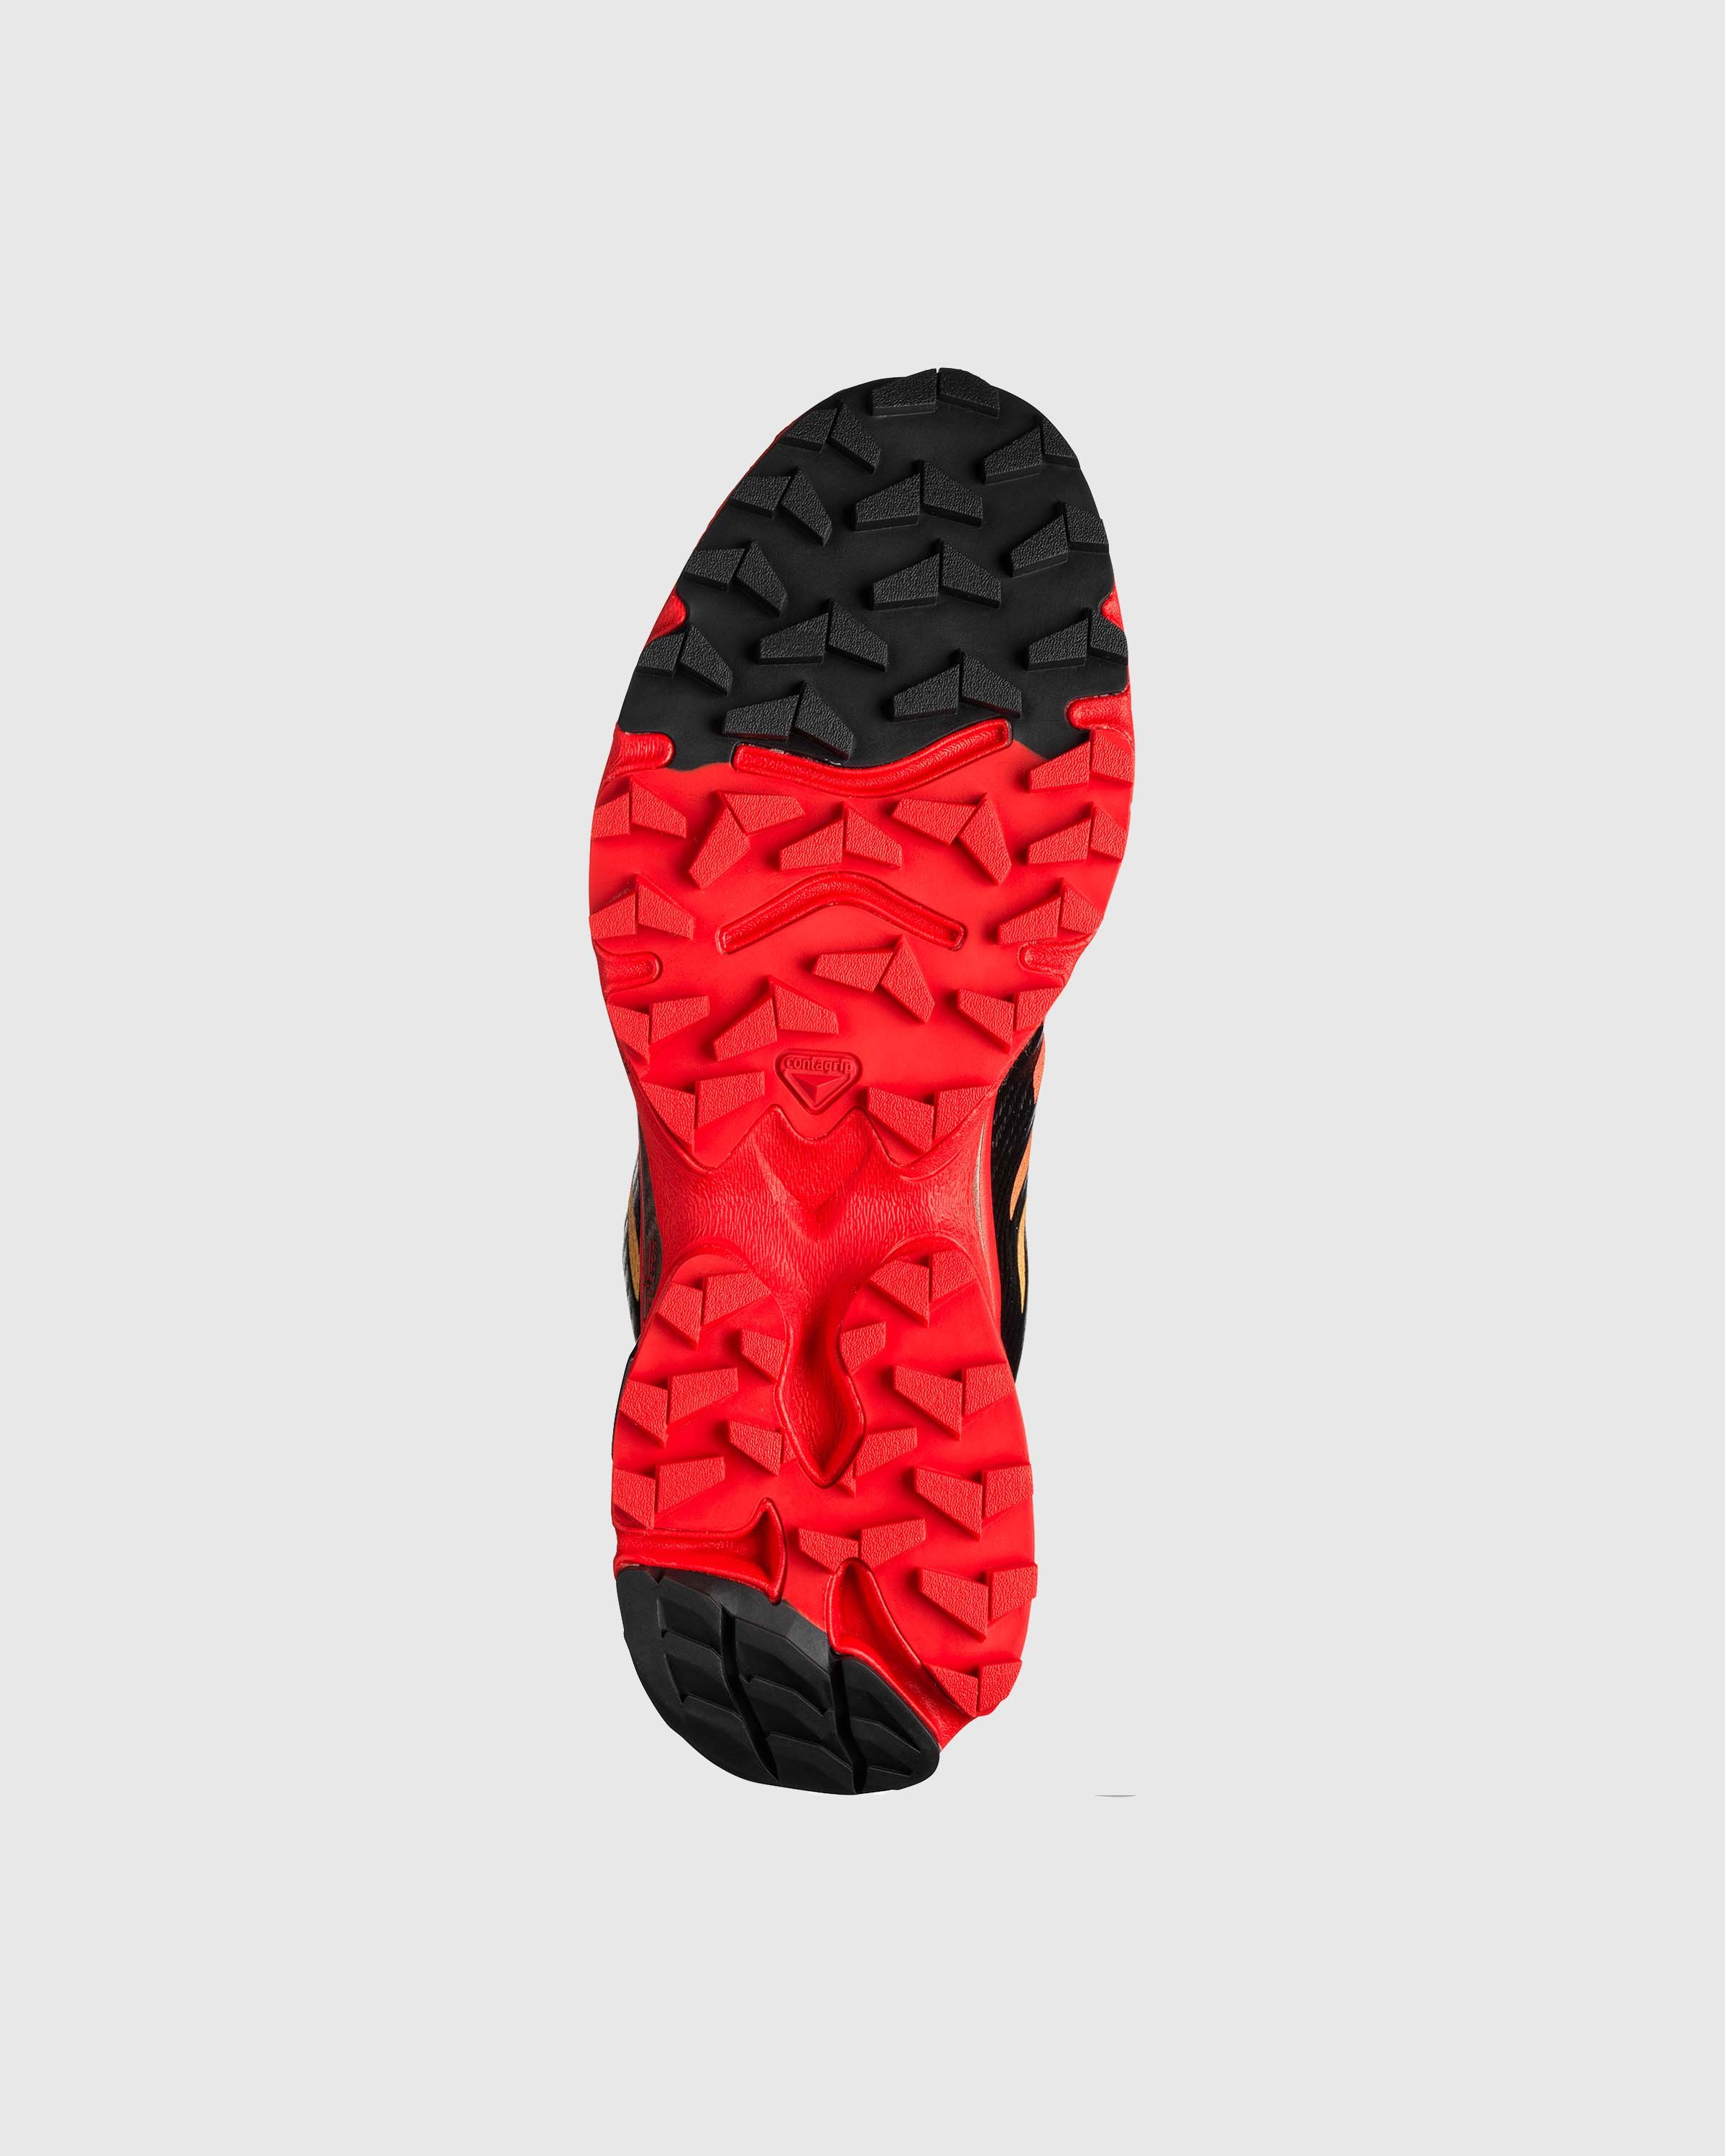 Salomon - XT-4 OG Fiery Red/Black/Yellow - Footwear - Red - Image 4